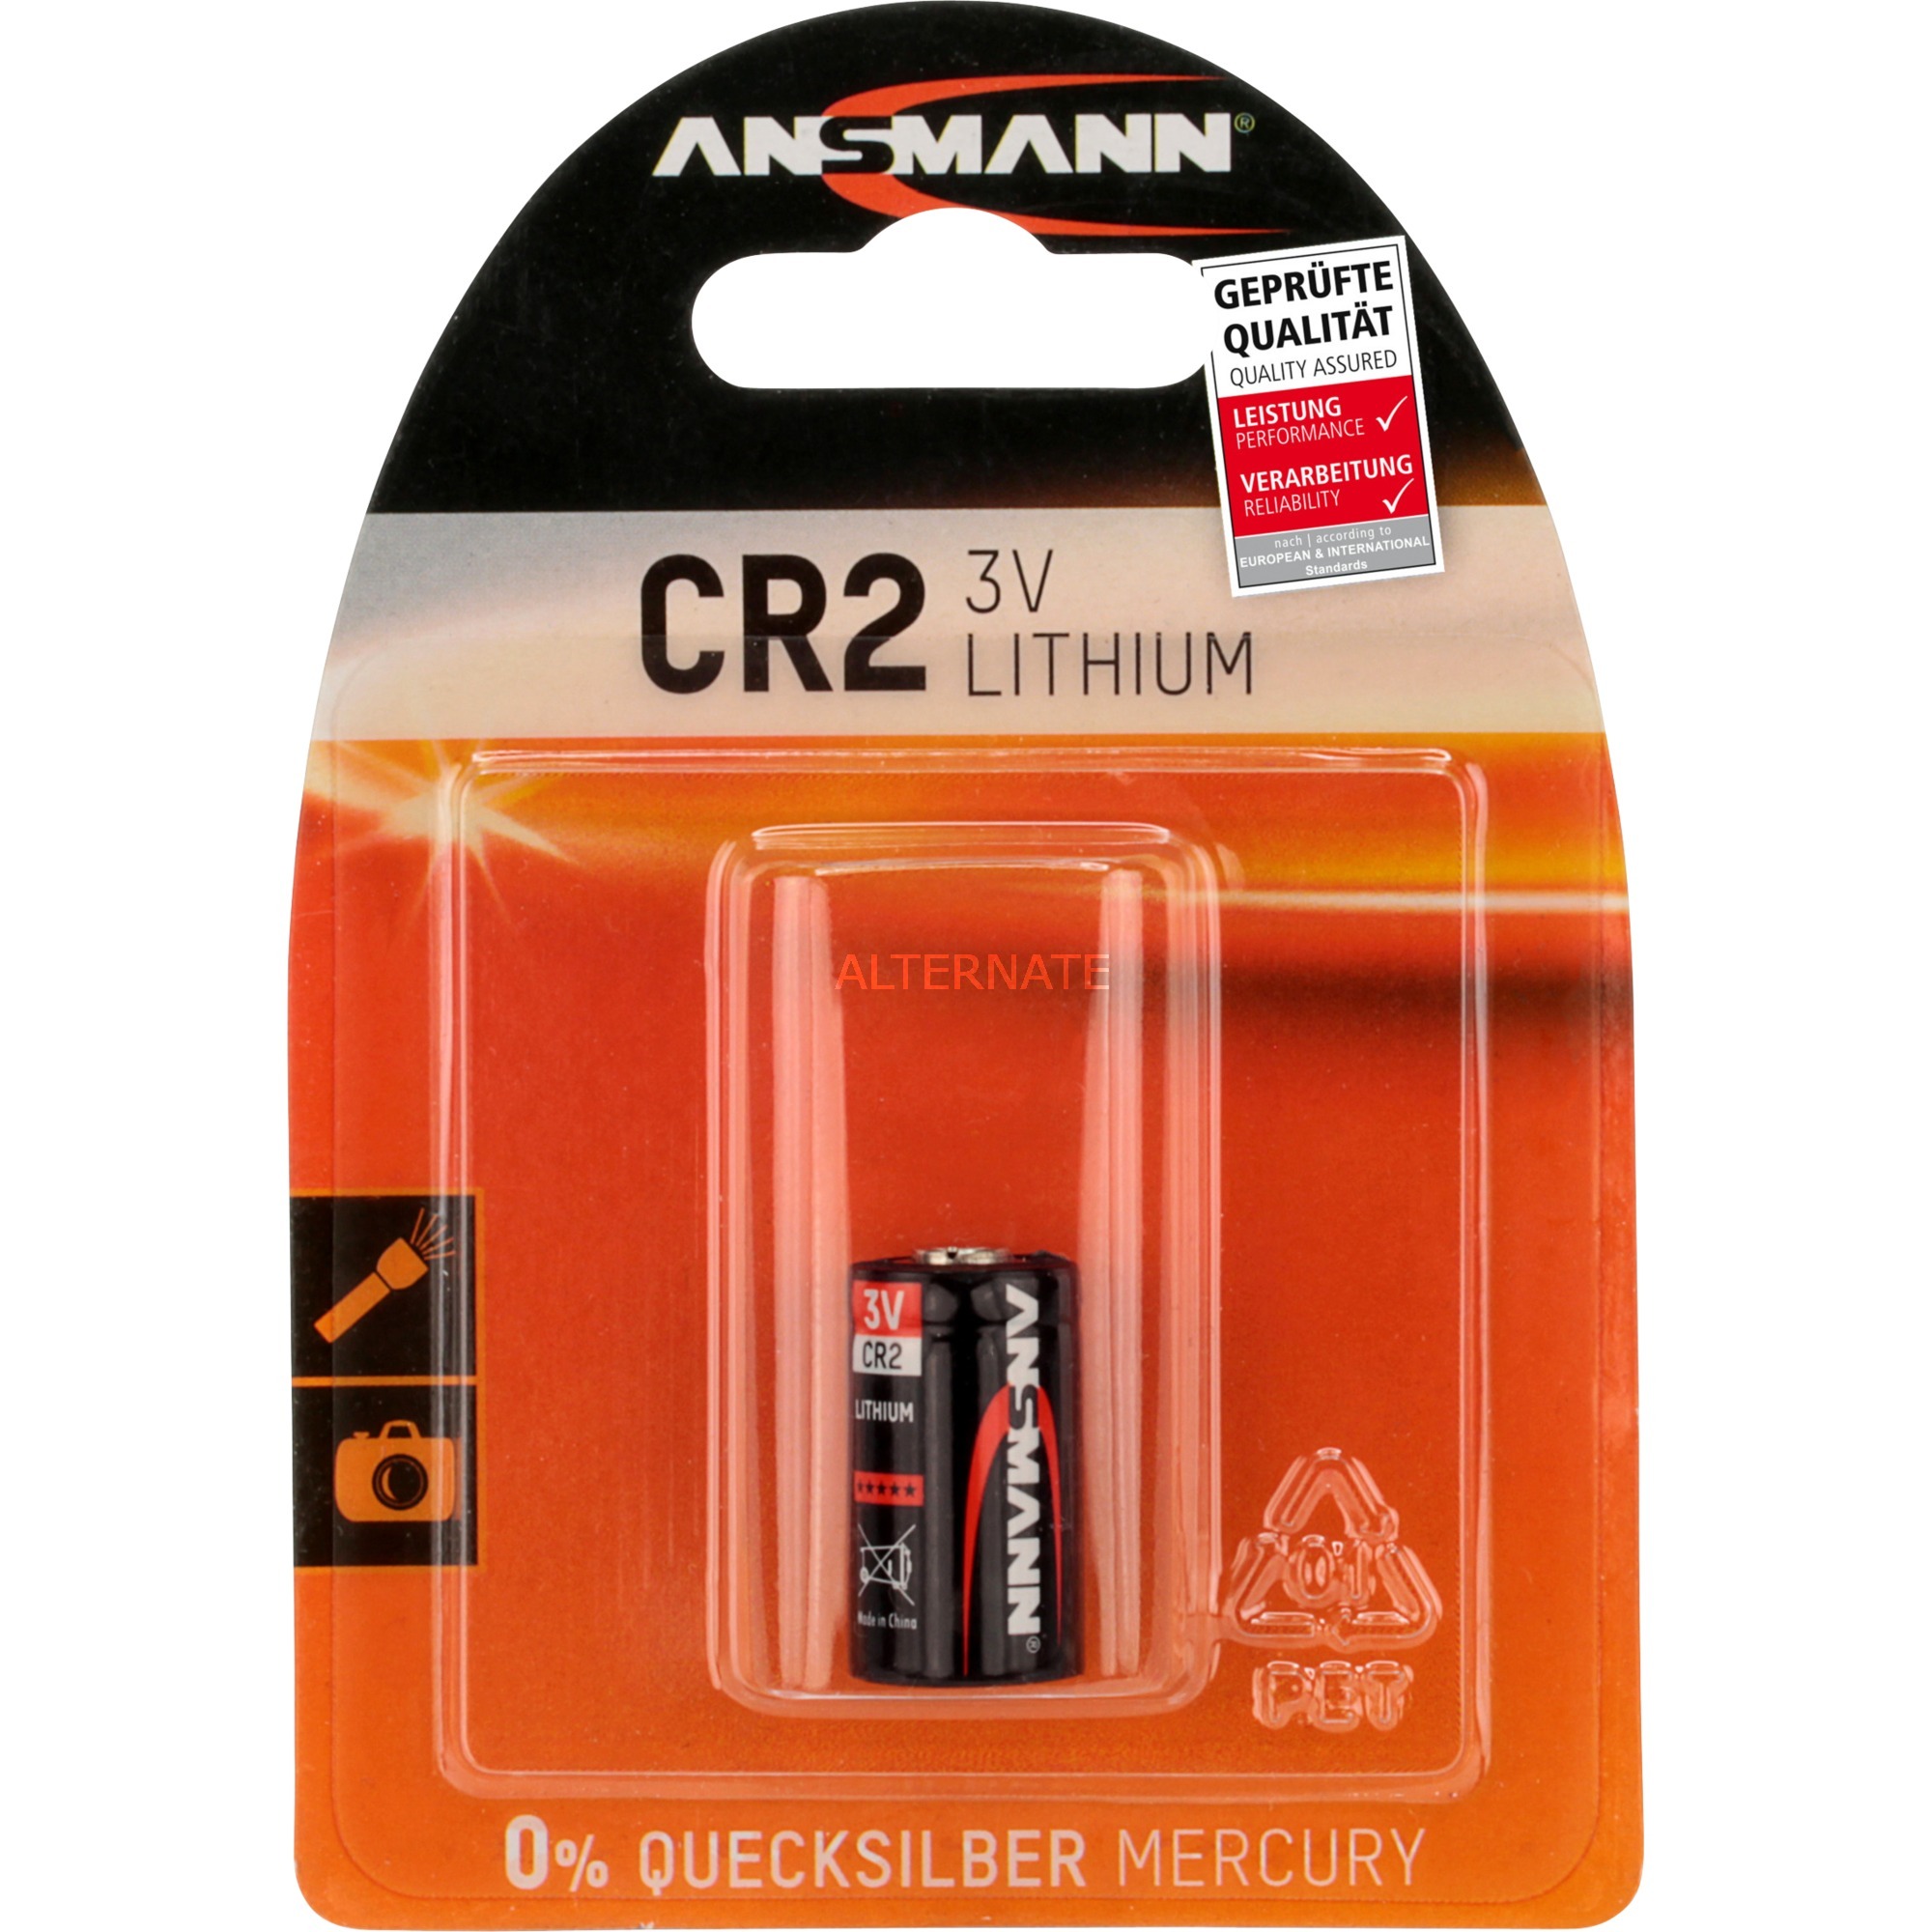 Image of Alternate - Lithium Batterie CR2/CR17335 online einkaufen bei Alternate